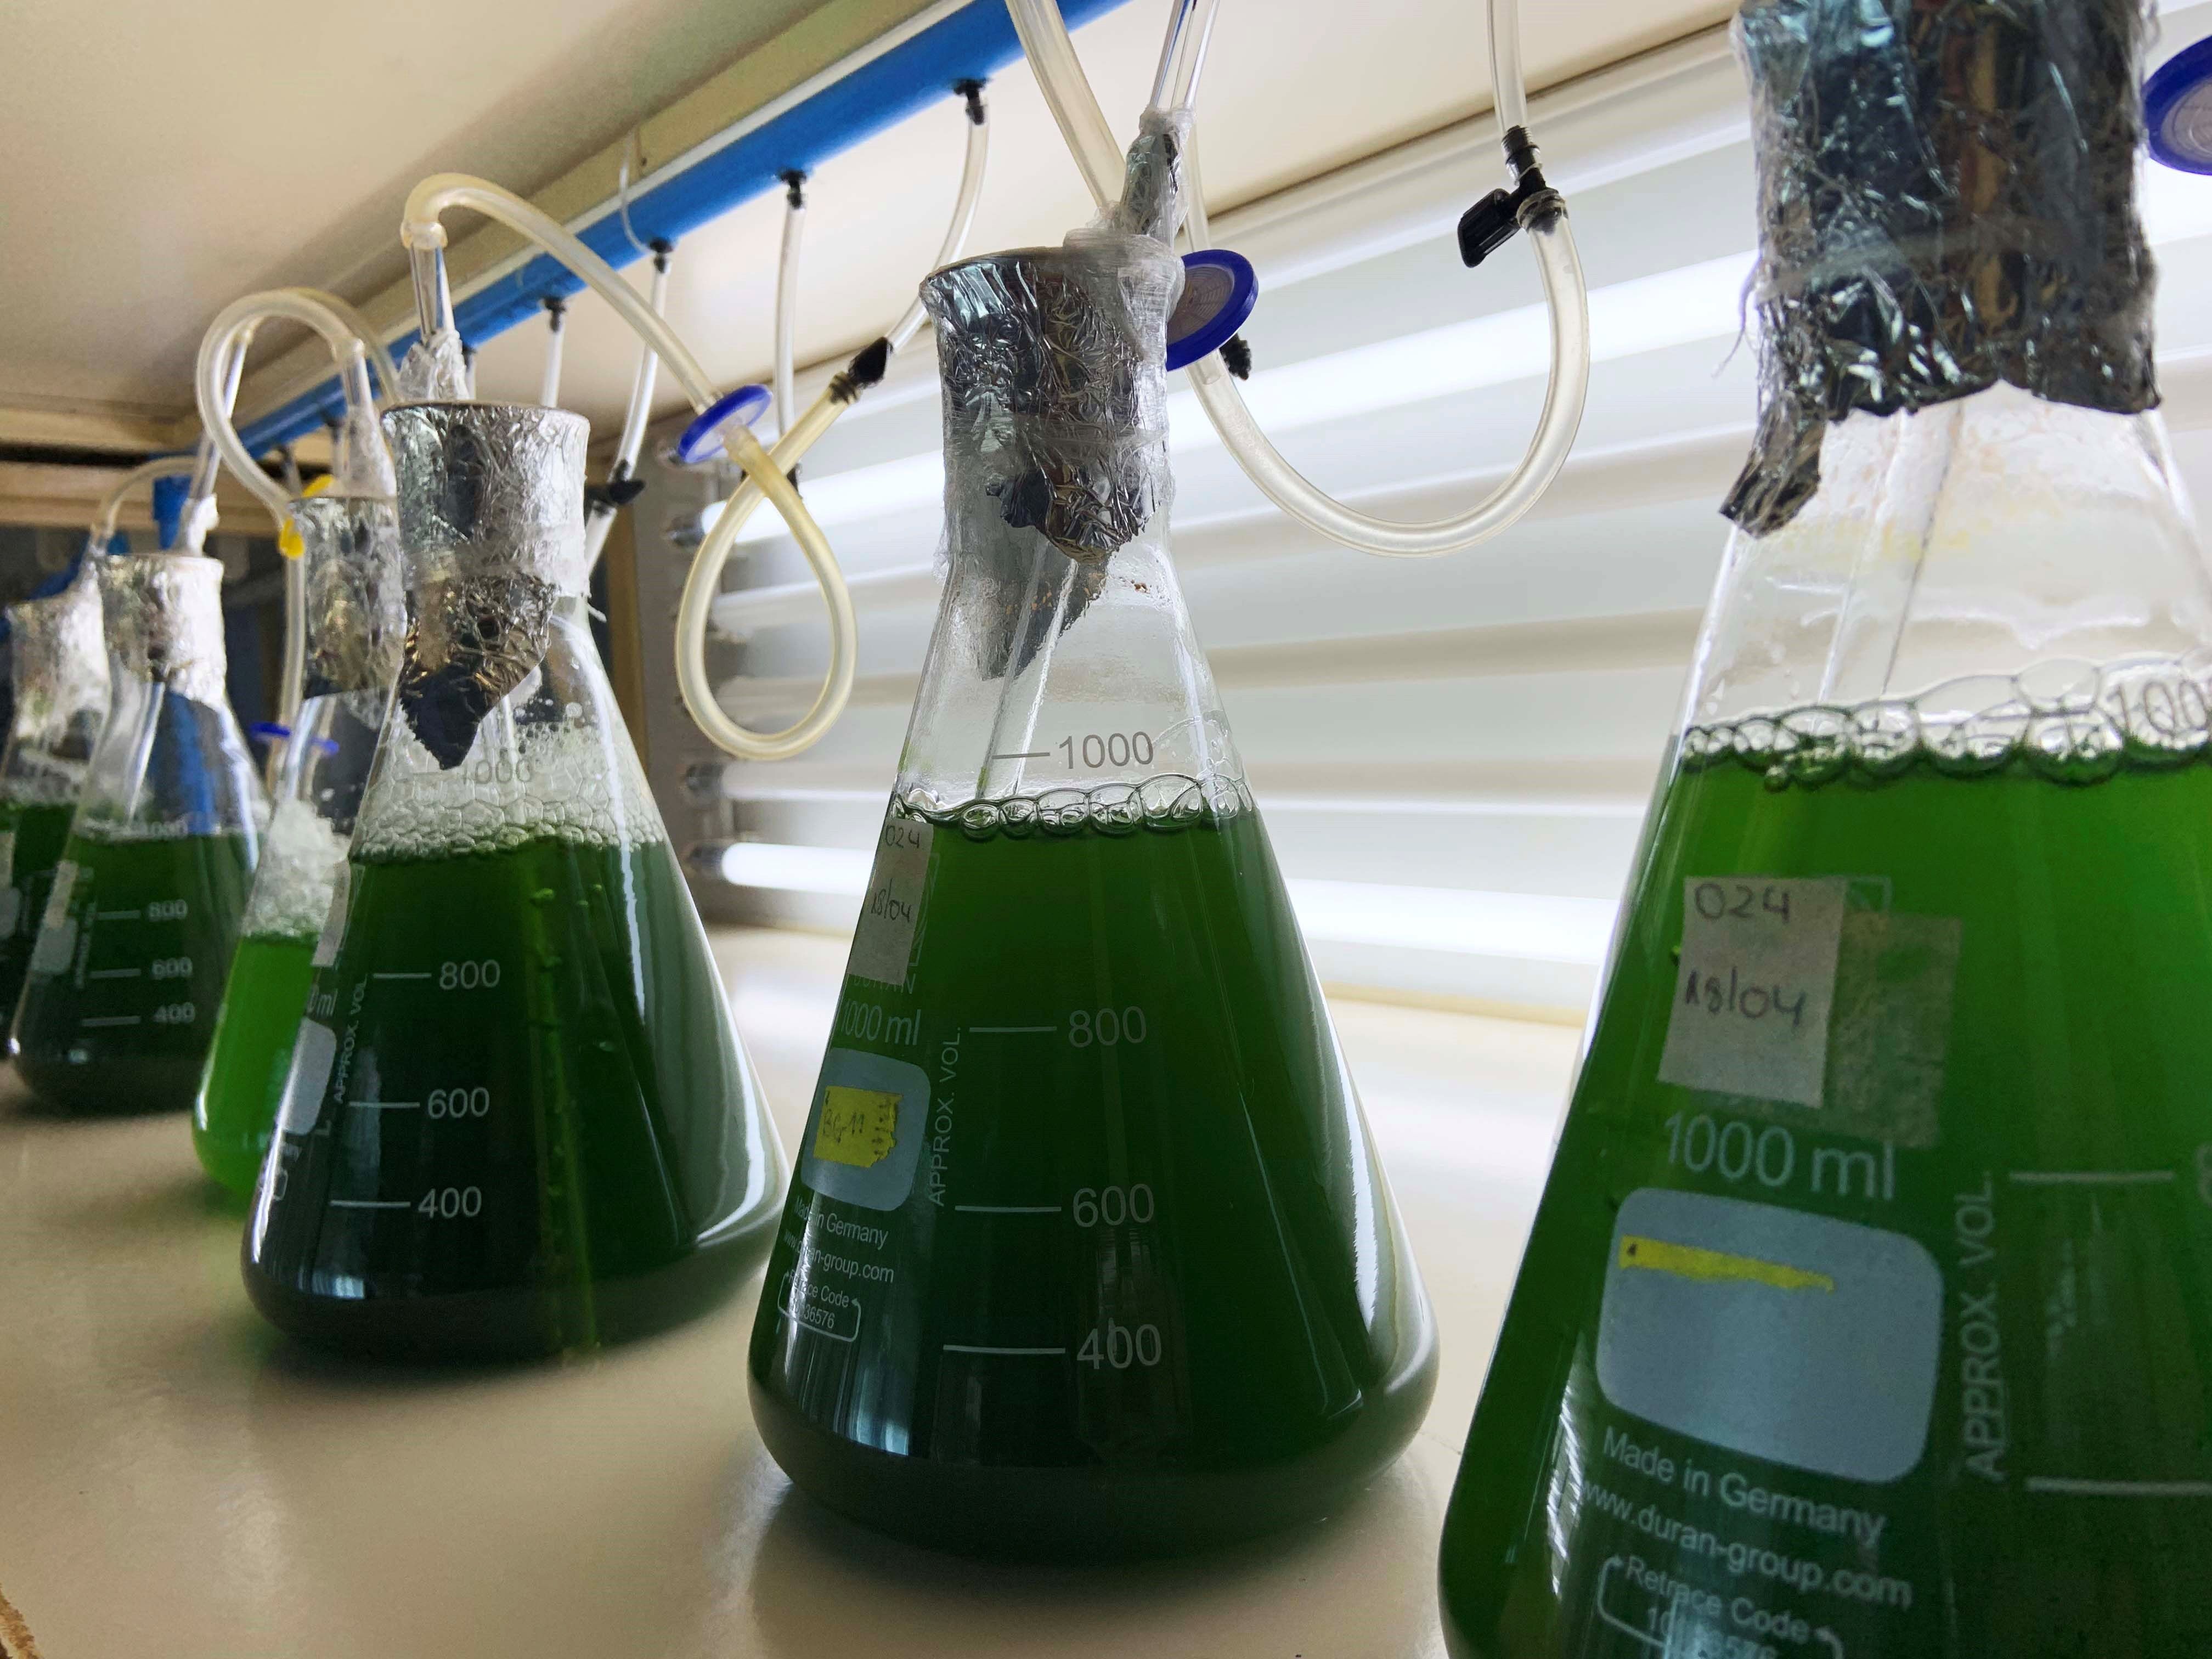 Las algas marinas han sido utilizadas para diversos estudios científicos debido a las propiedades que presentan. (Foto Prensa Libre: EFE)